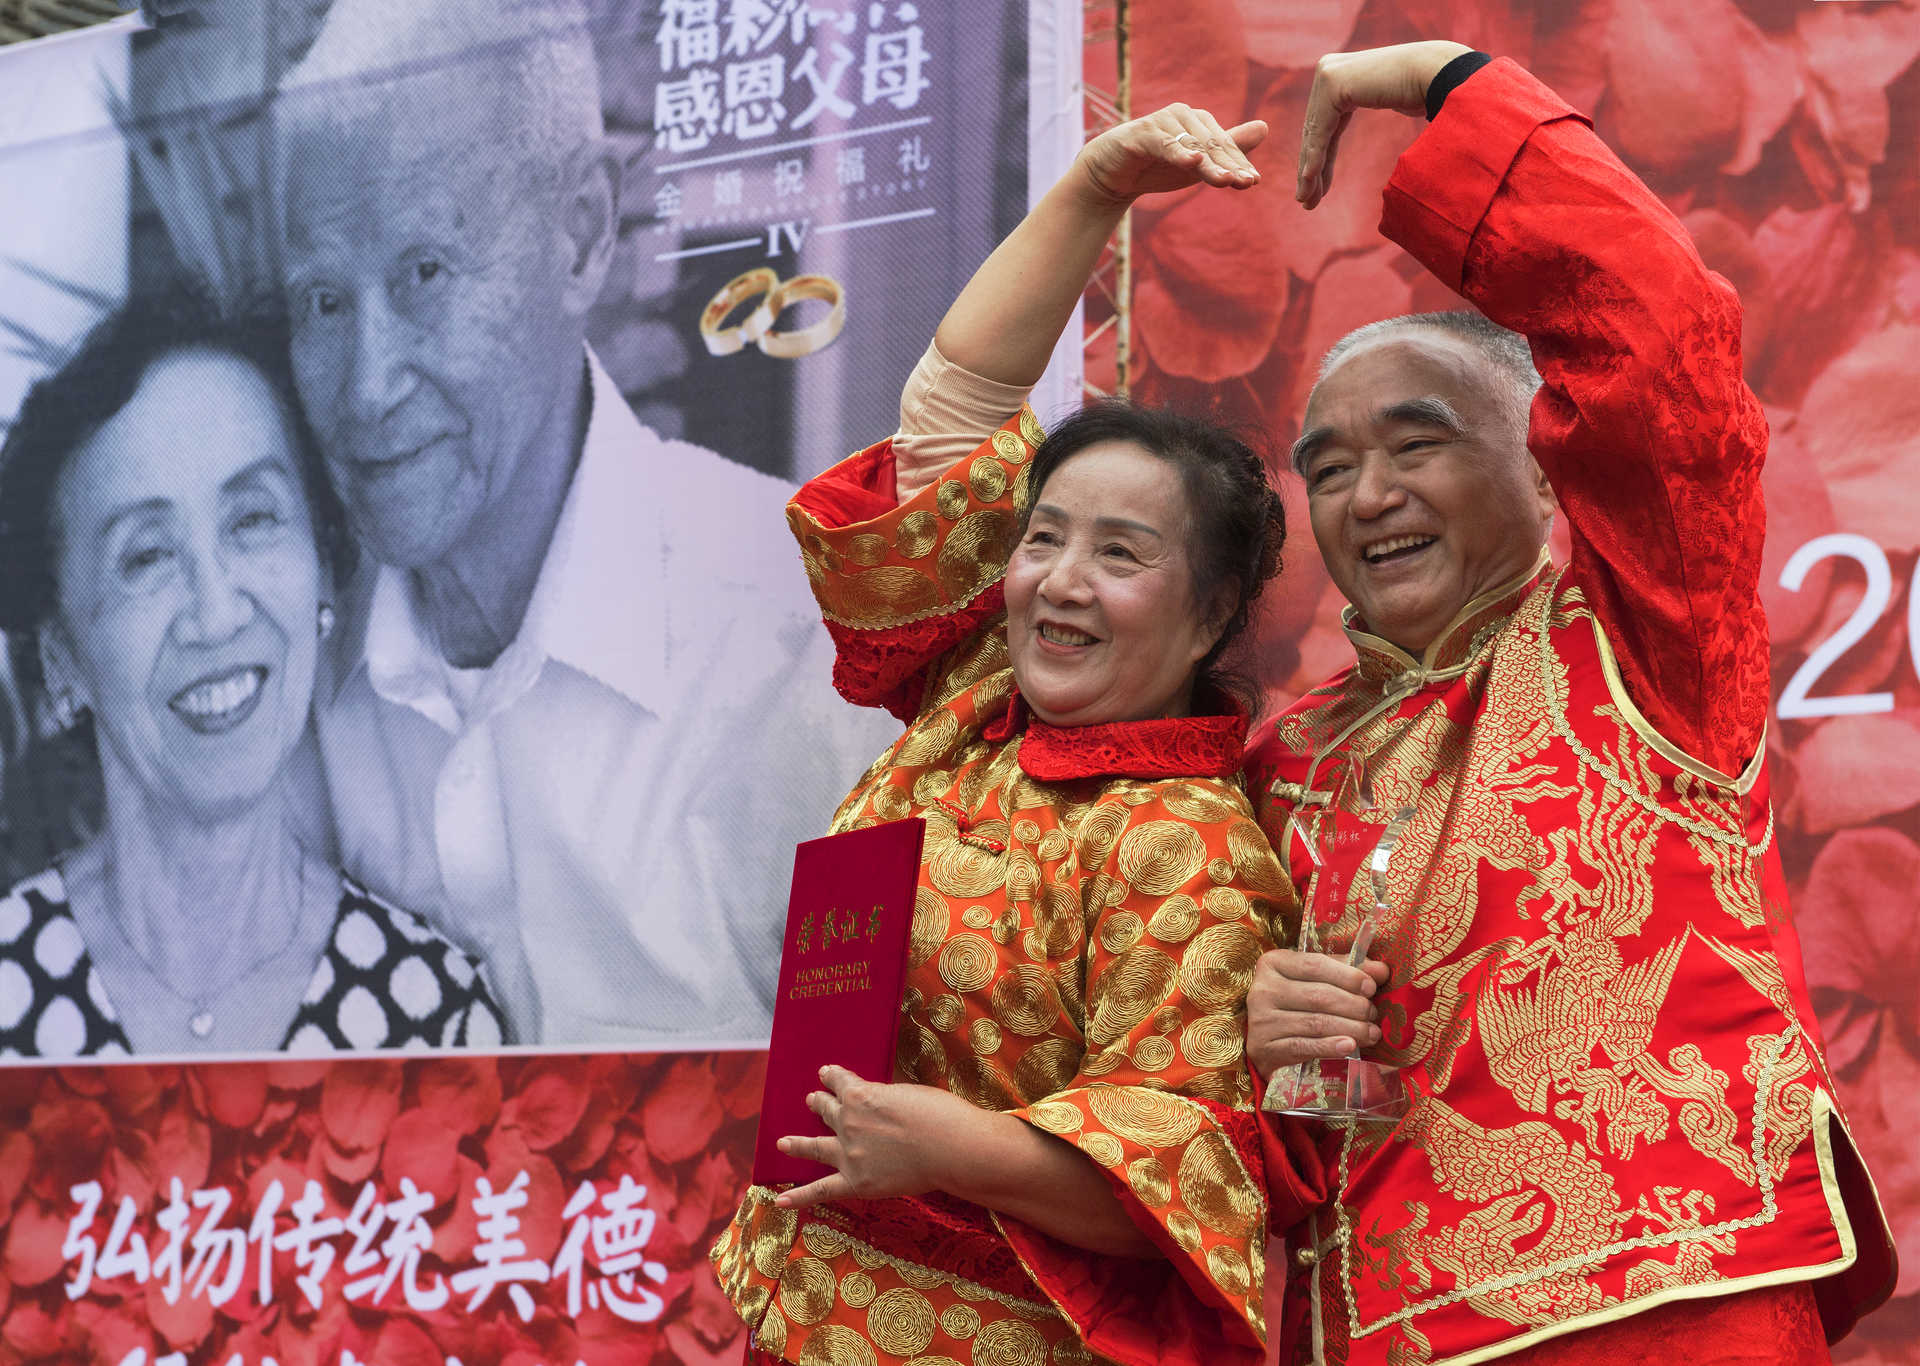 《金婚老人秀恩爱》80岁的金婚老人登上领奖台，获得了重庆最美好家庭，有趣的合影秀出恩爱。.jpg